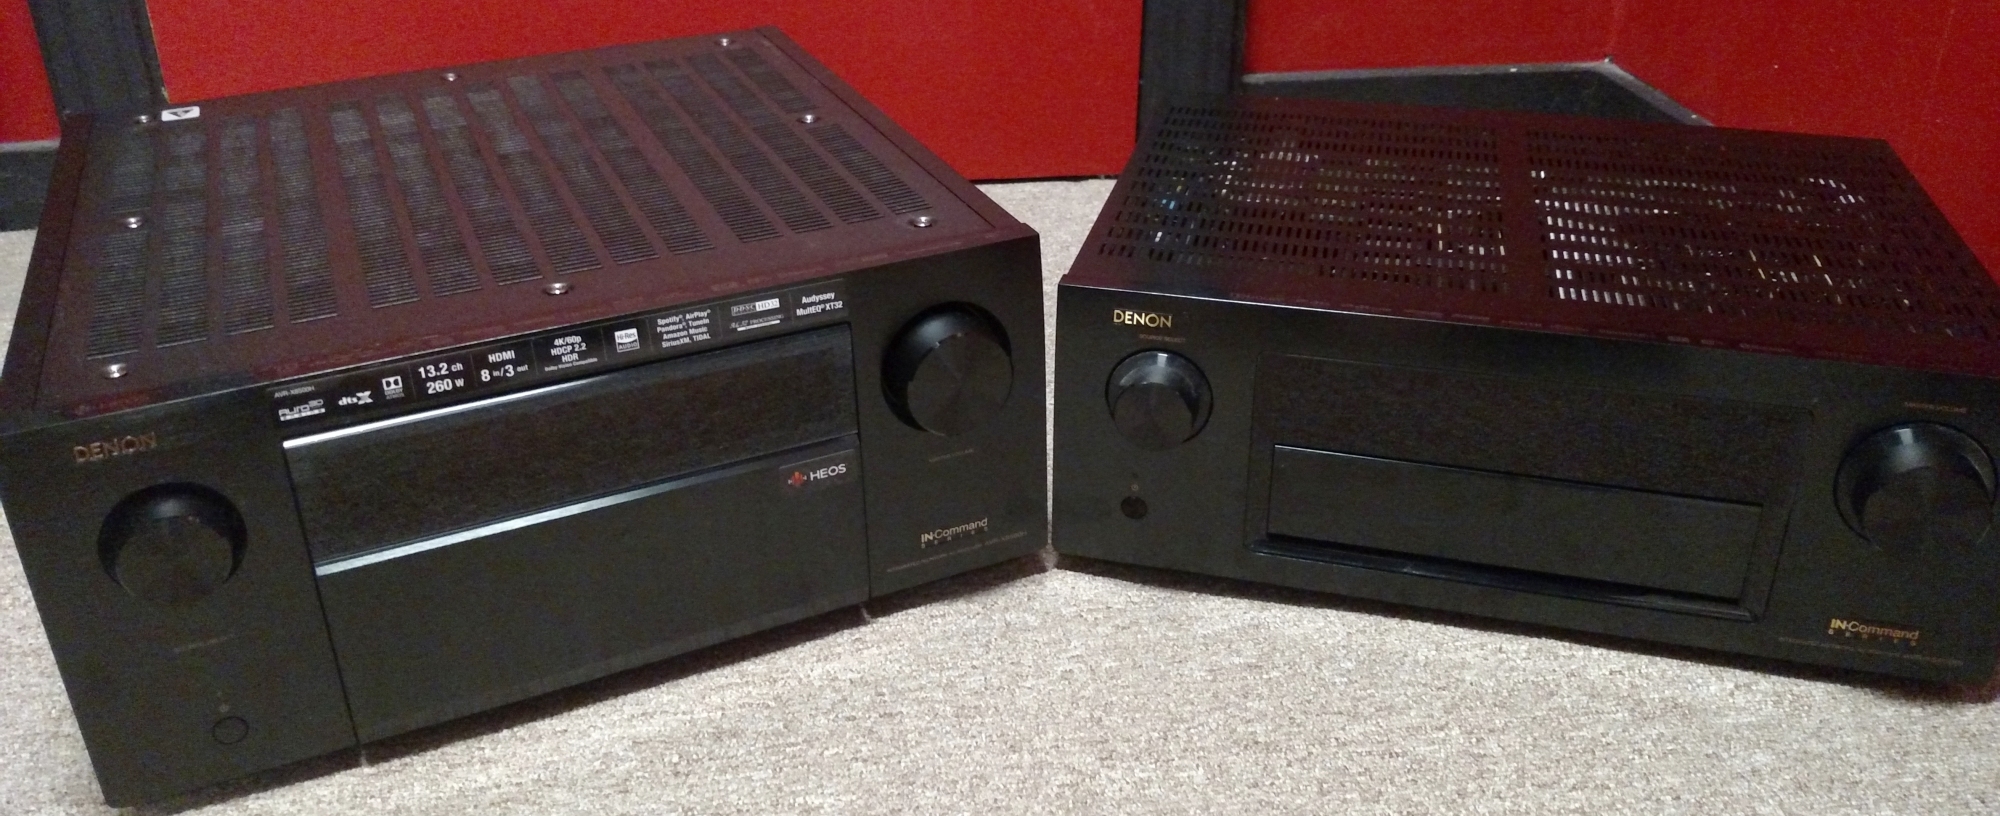 Denon X8500H (left) vs X5200 (right)